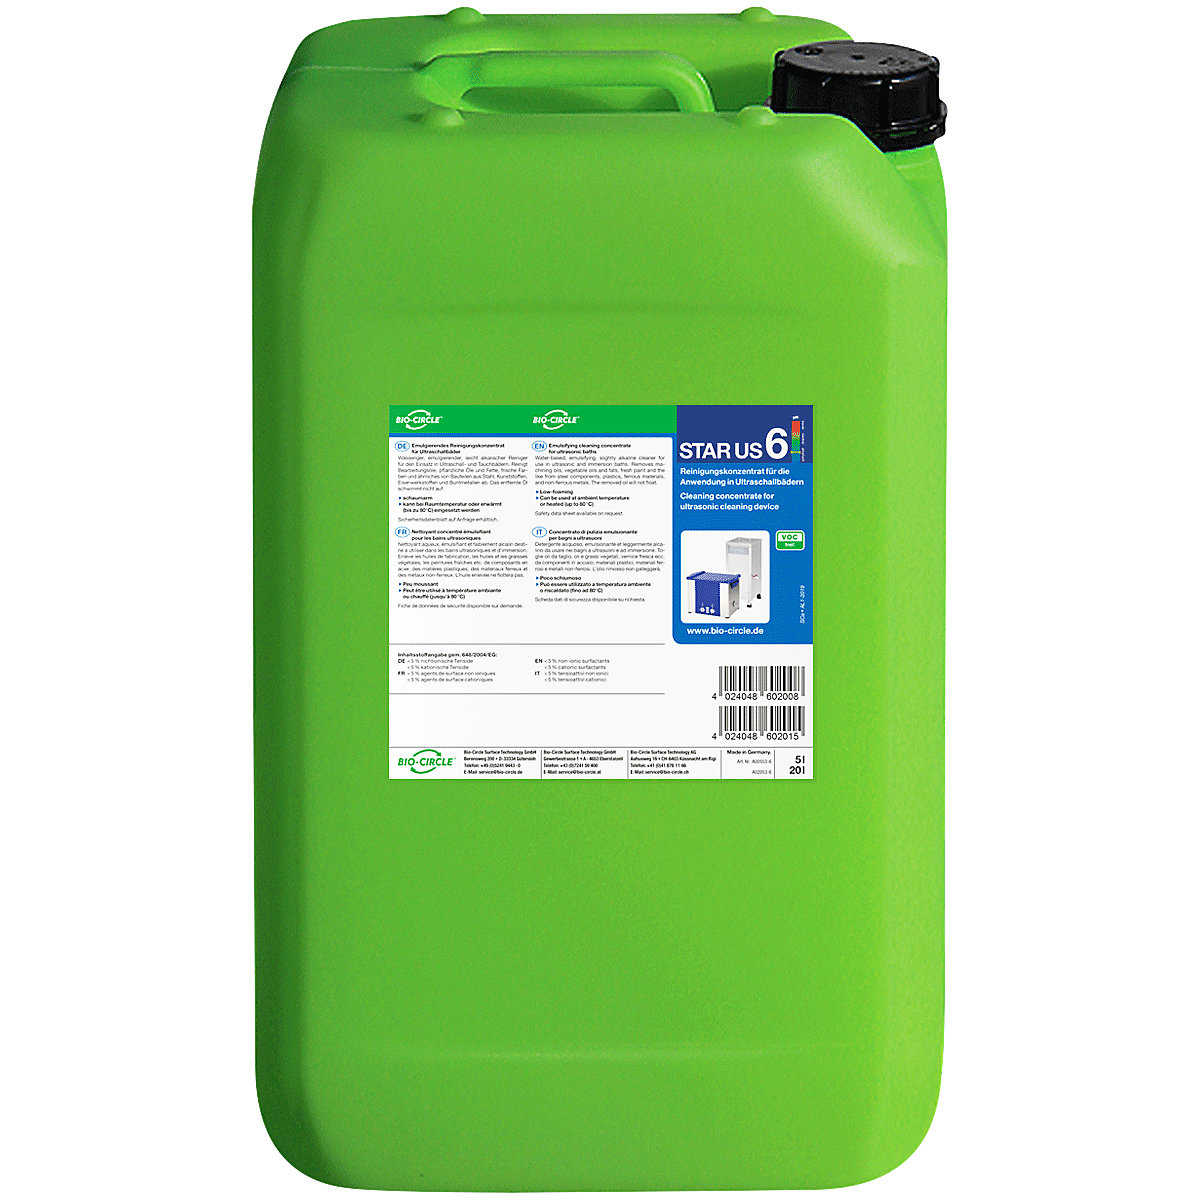 Detergente para limpeza ultrassónica STAR US 6 – Bio-Circle, não necessita de marcação, conteúdo 20 l-1